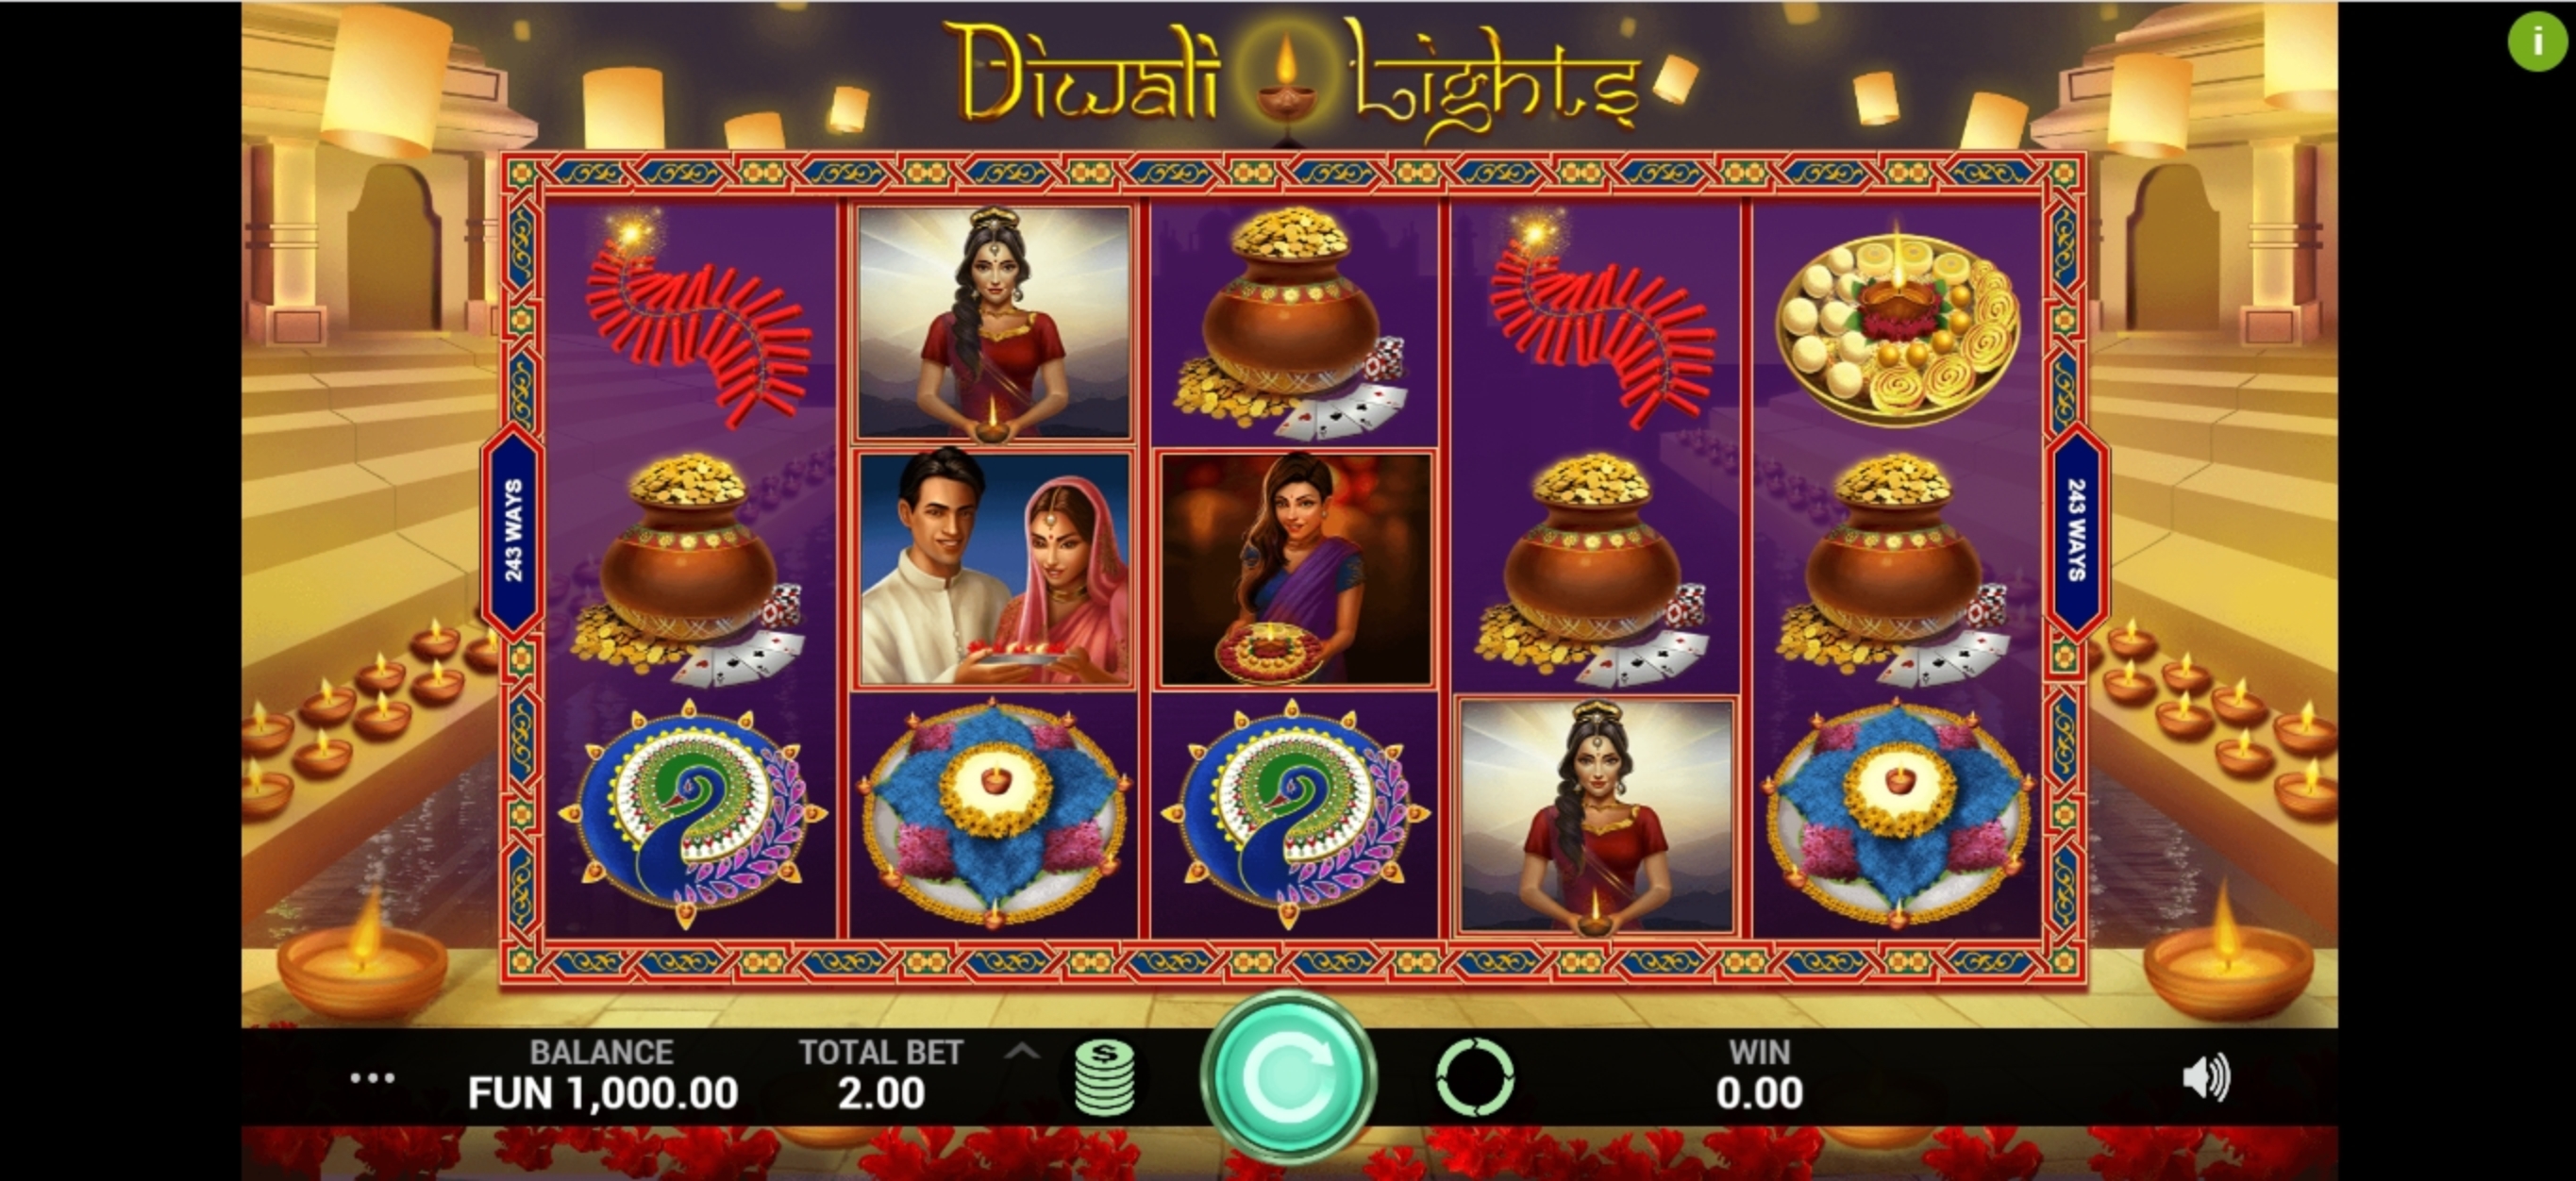 Reels in Diwali Lights Slot Game by Indi Slots